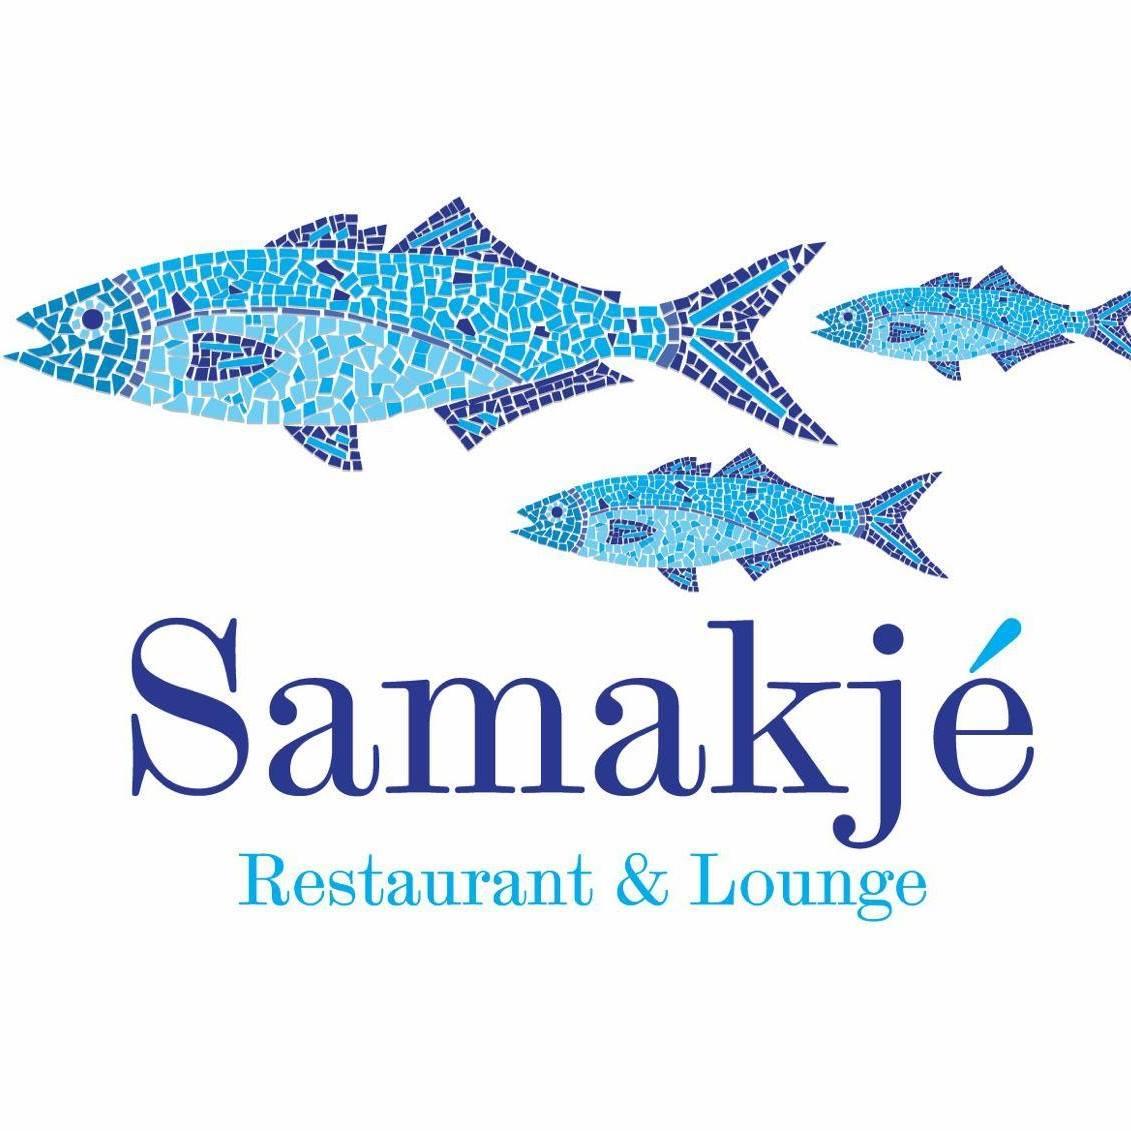 Samakje Restaurant & Lounge